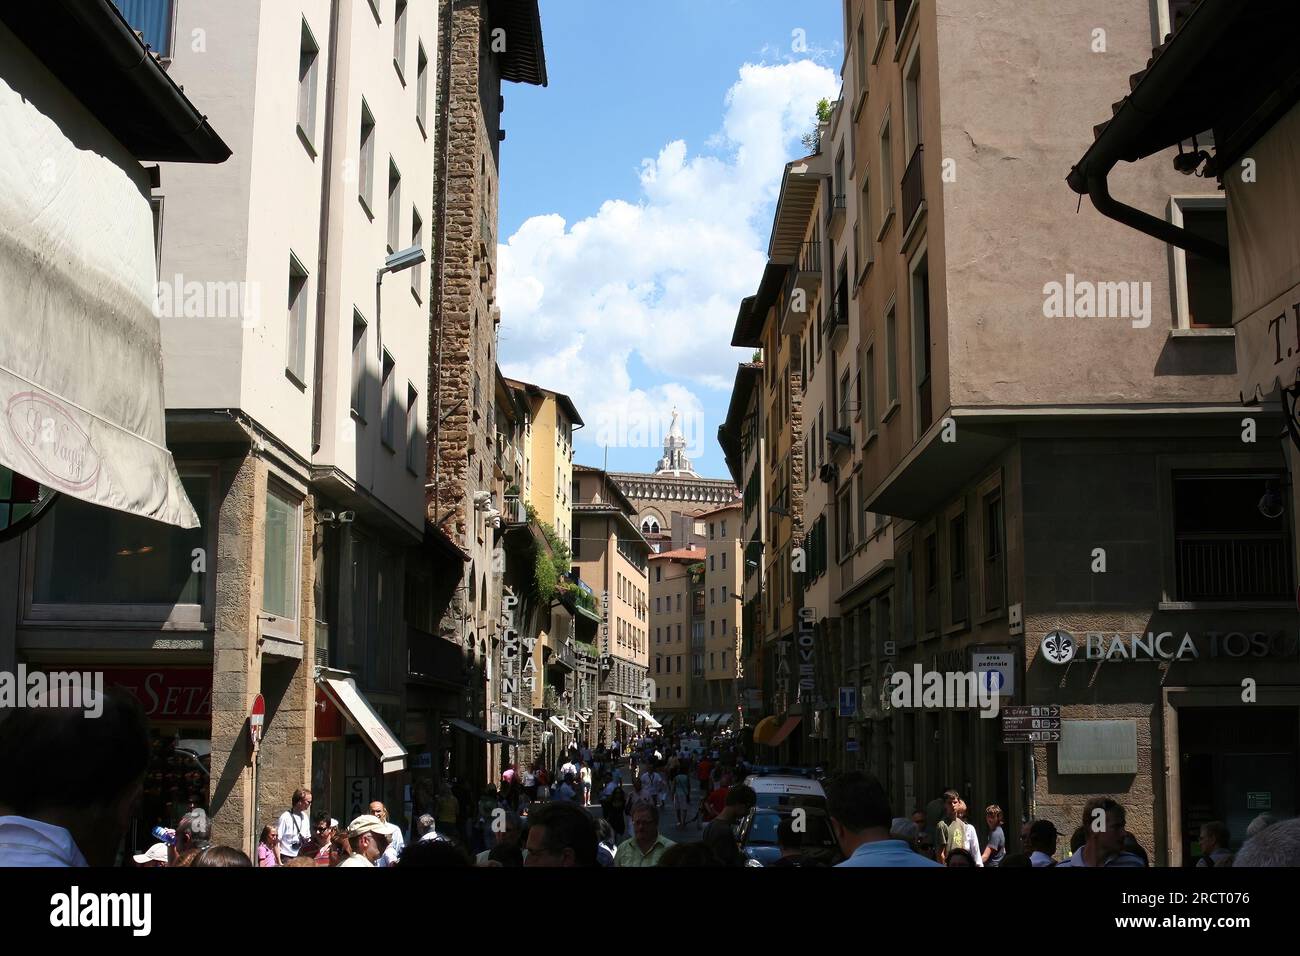 7-1-2021, florence, italie : photos de la ville de Florence en italie Banque D'Images